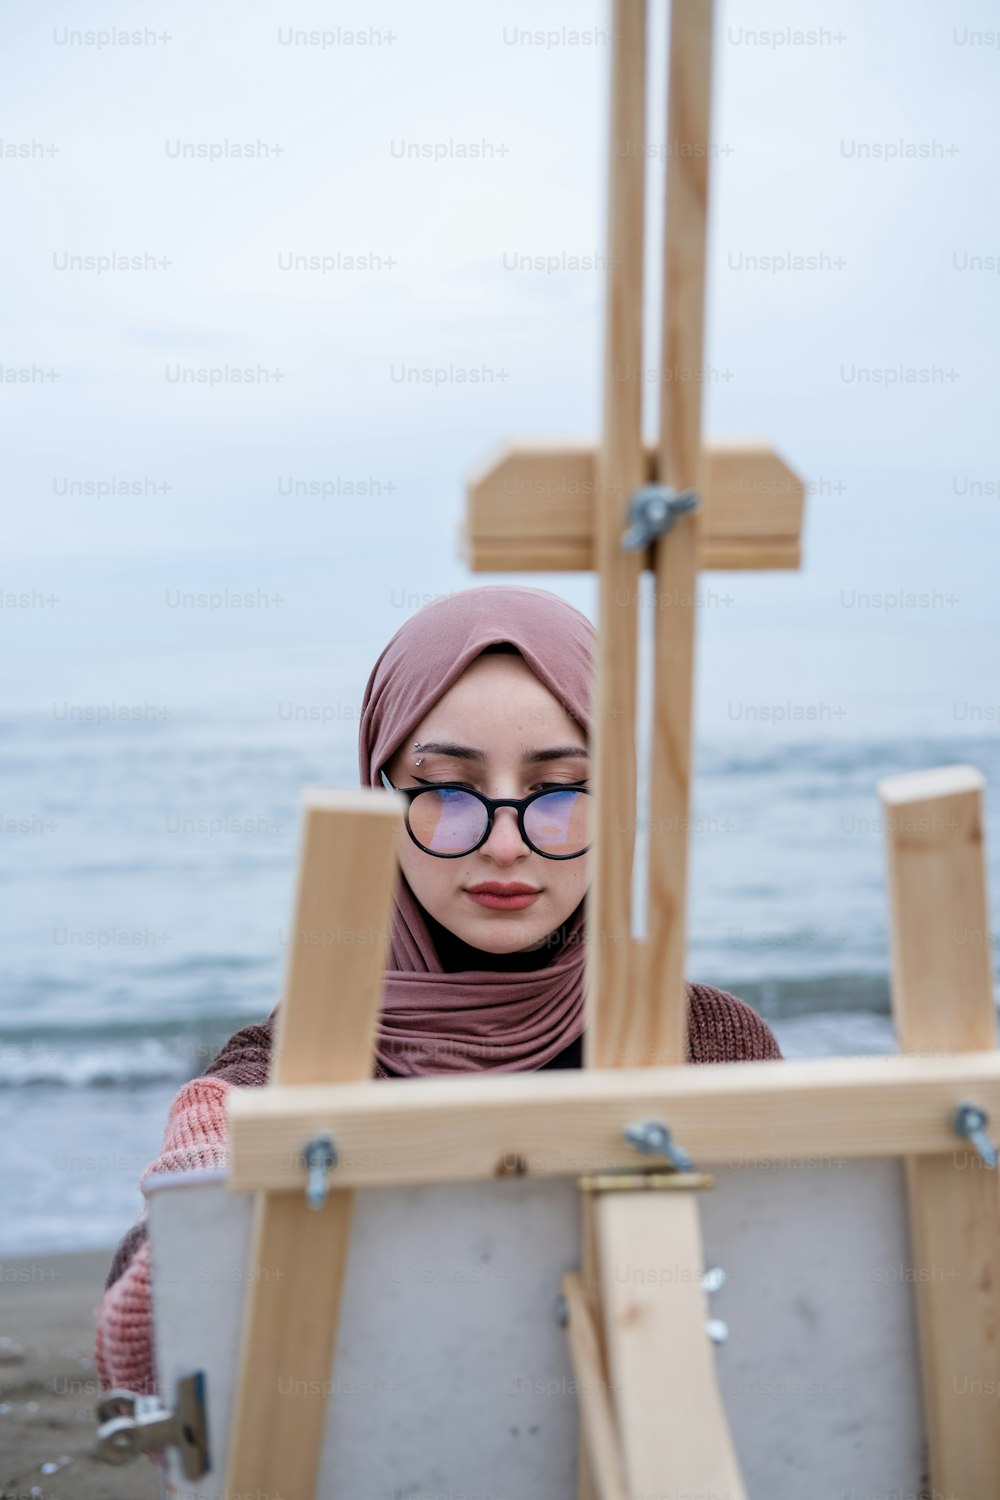 Eine Frau mit Brille und Hijab schaut auf eine Malstaffelei